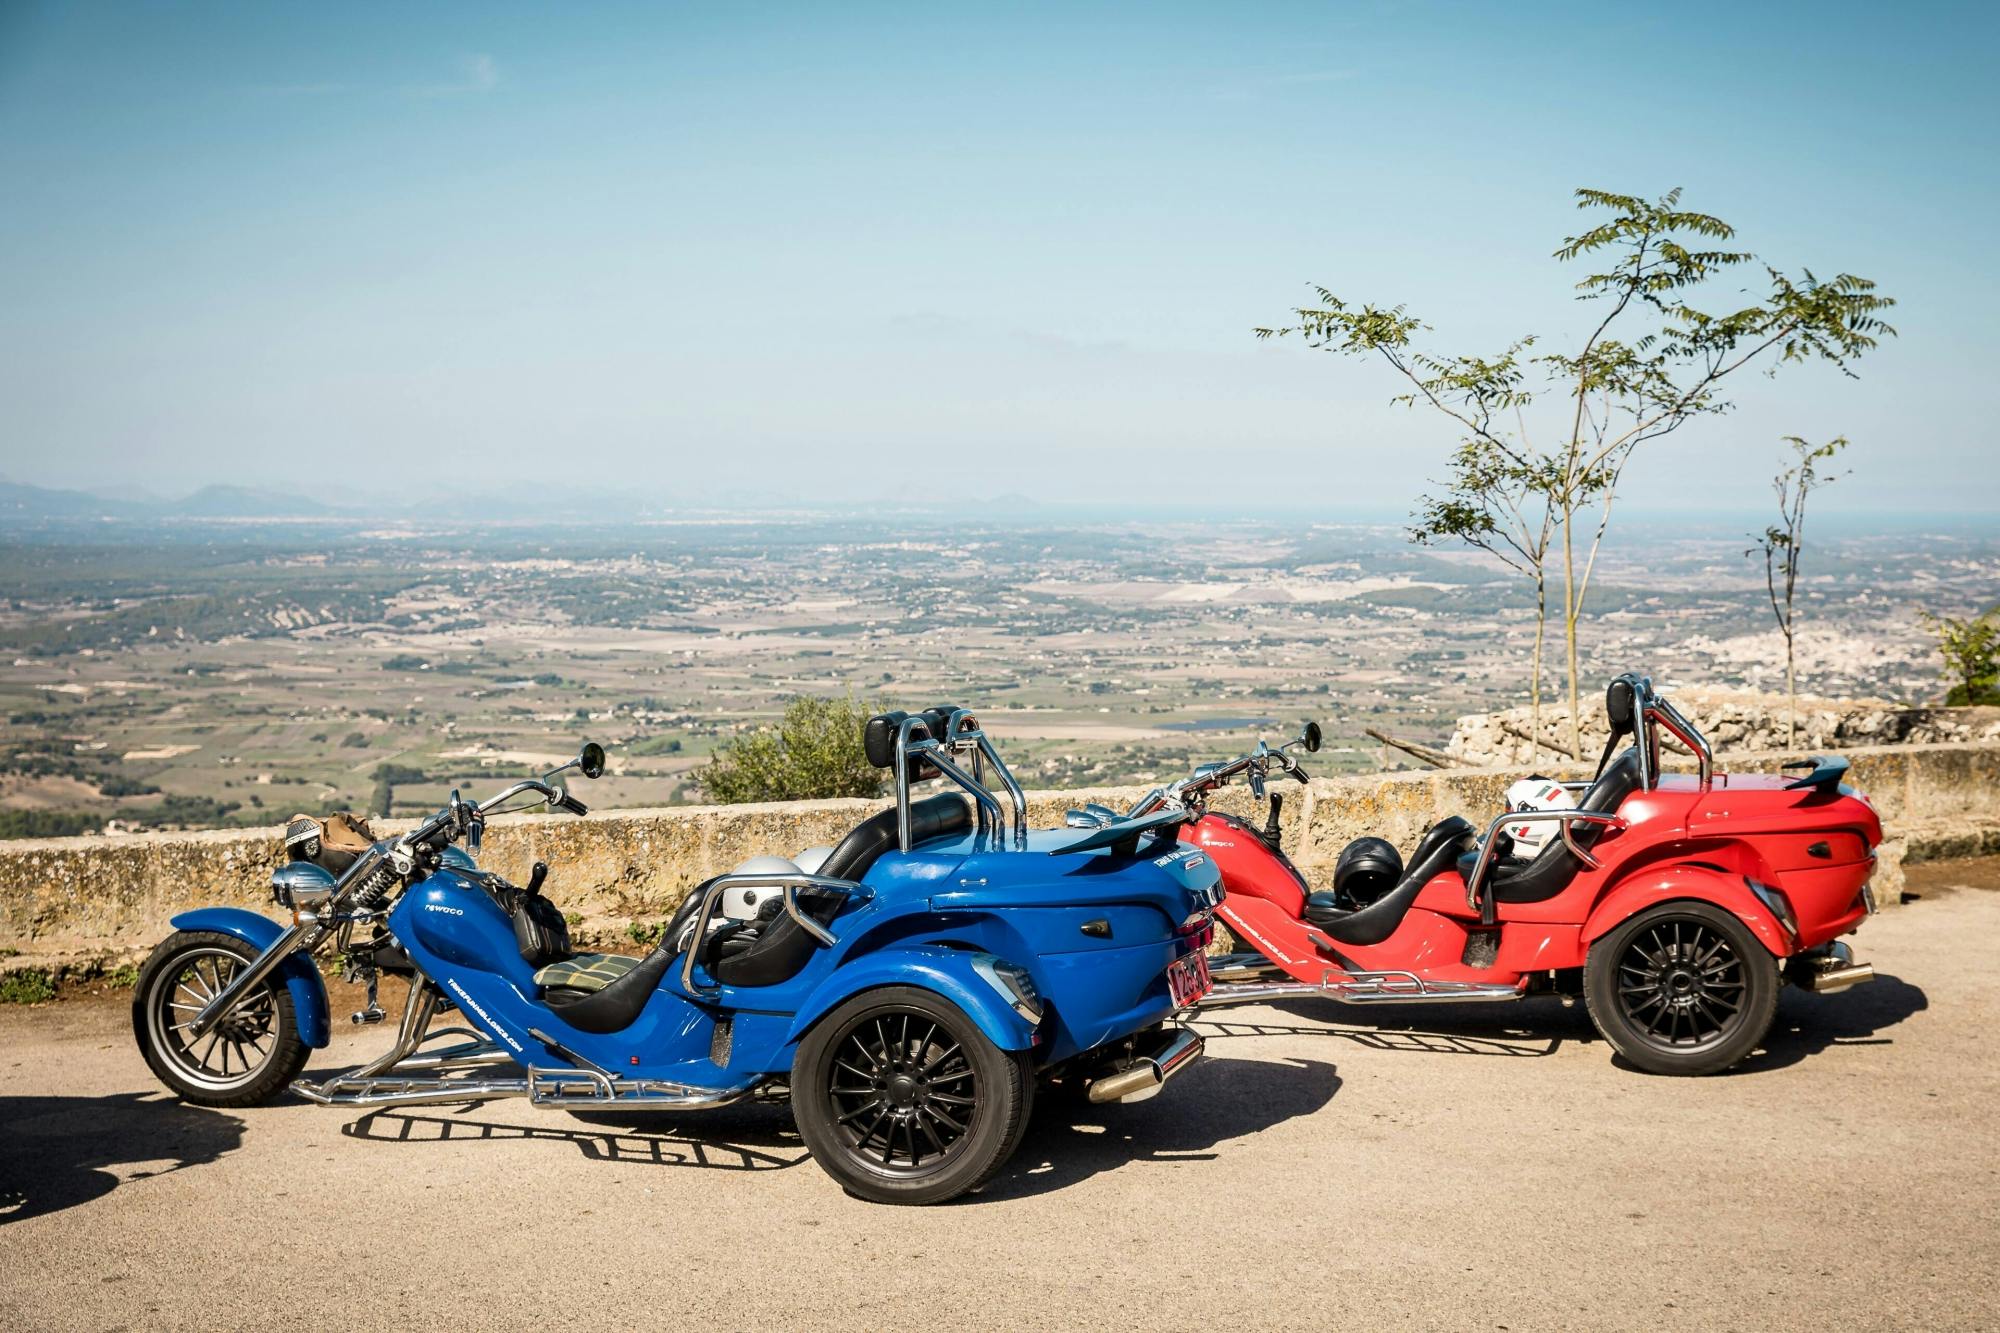 Bjerge, kyster og landskaber på tur med trike-motorcykel